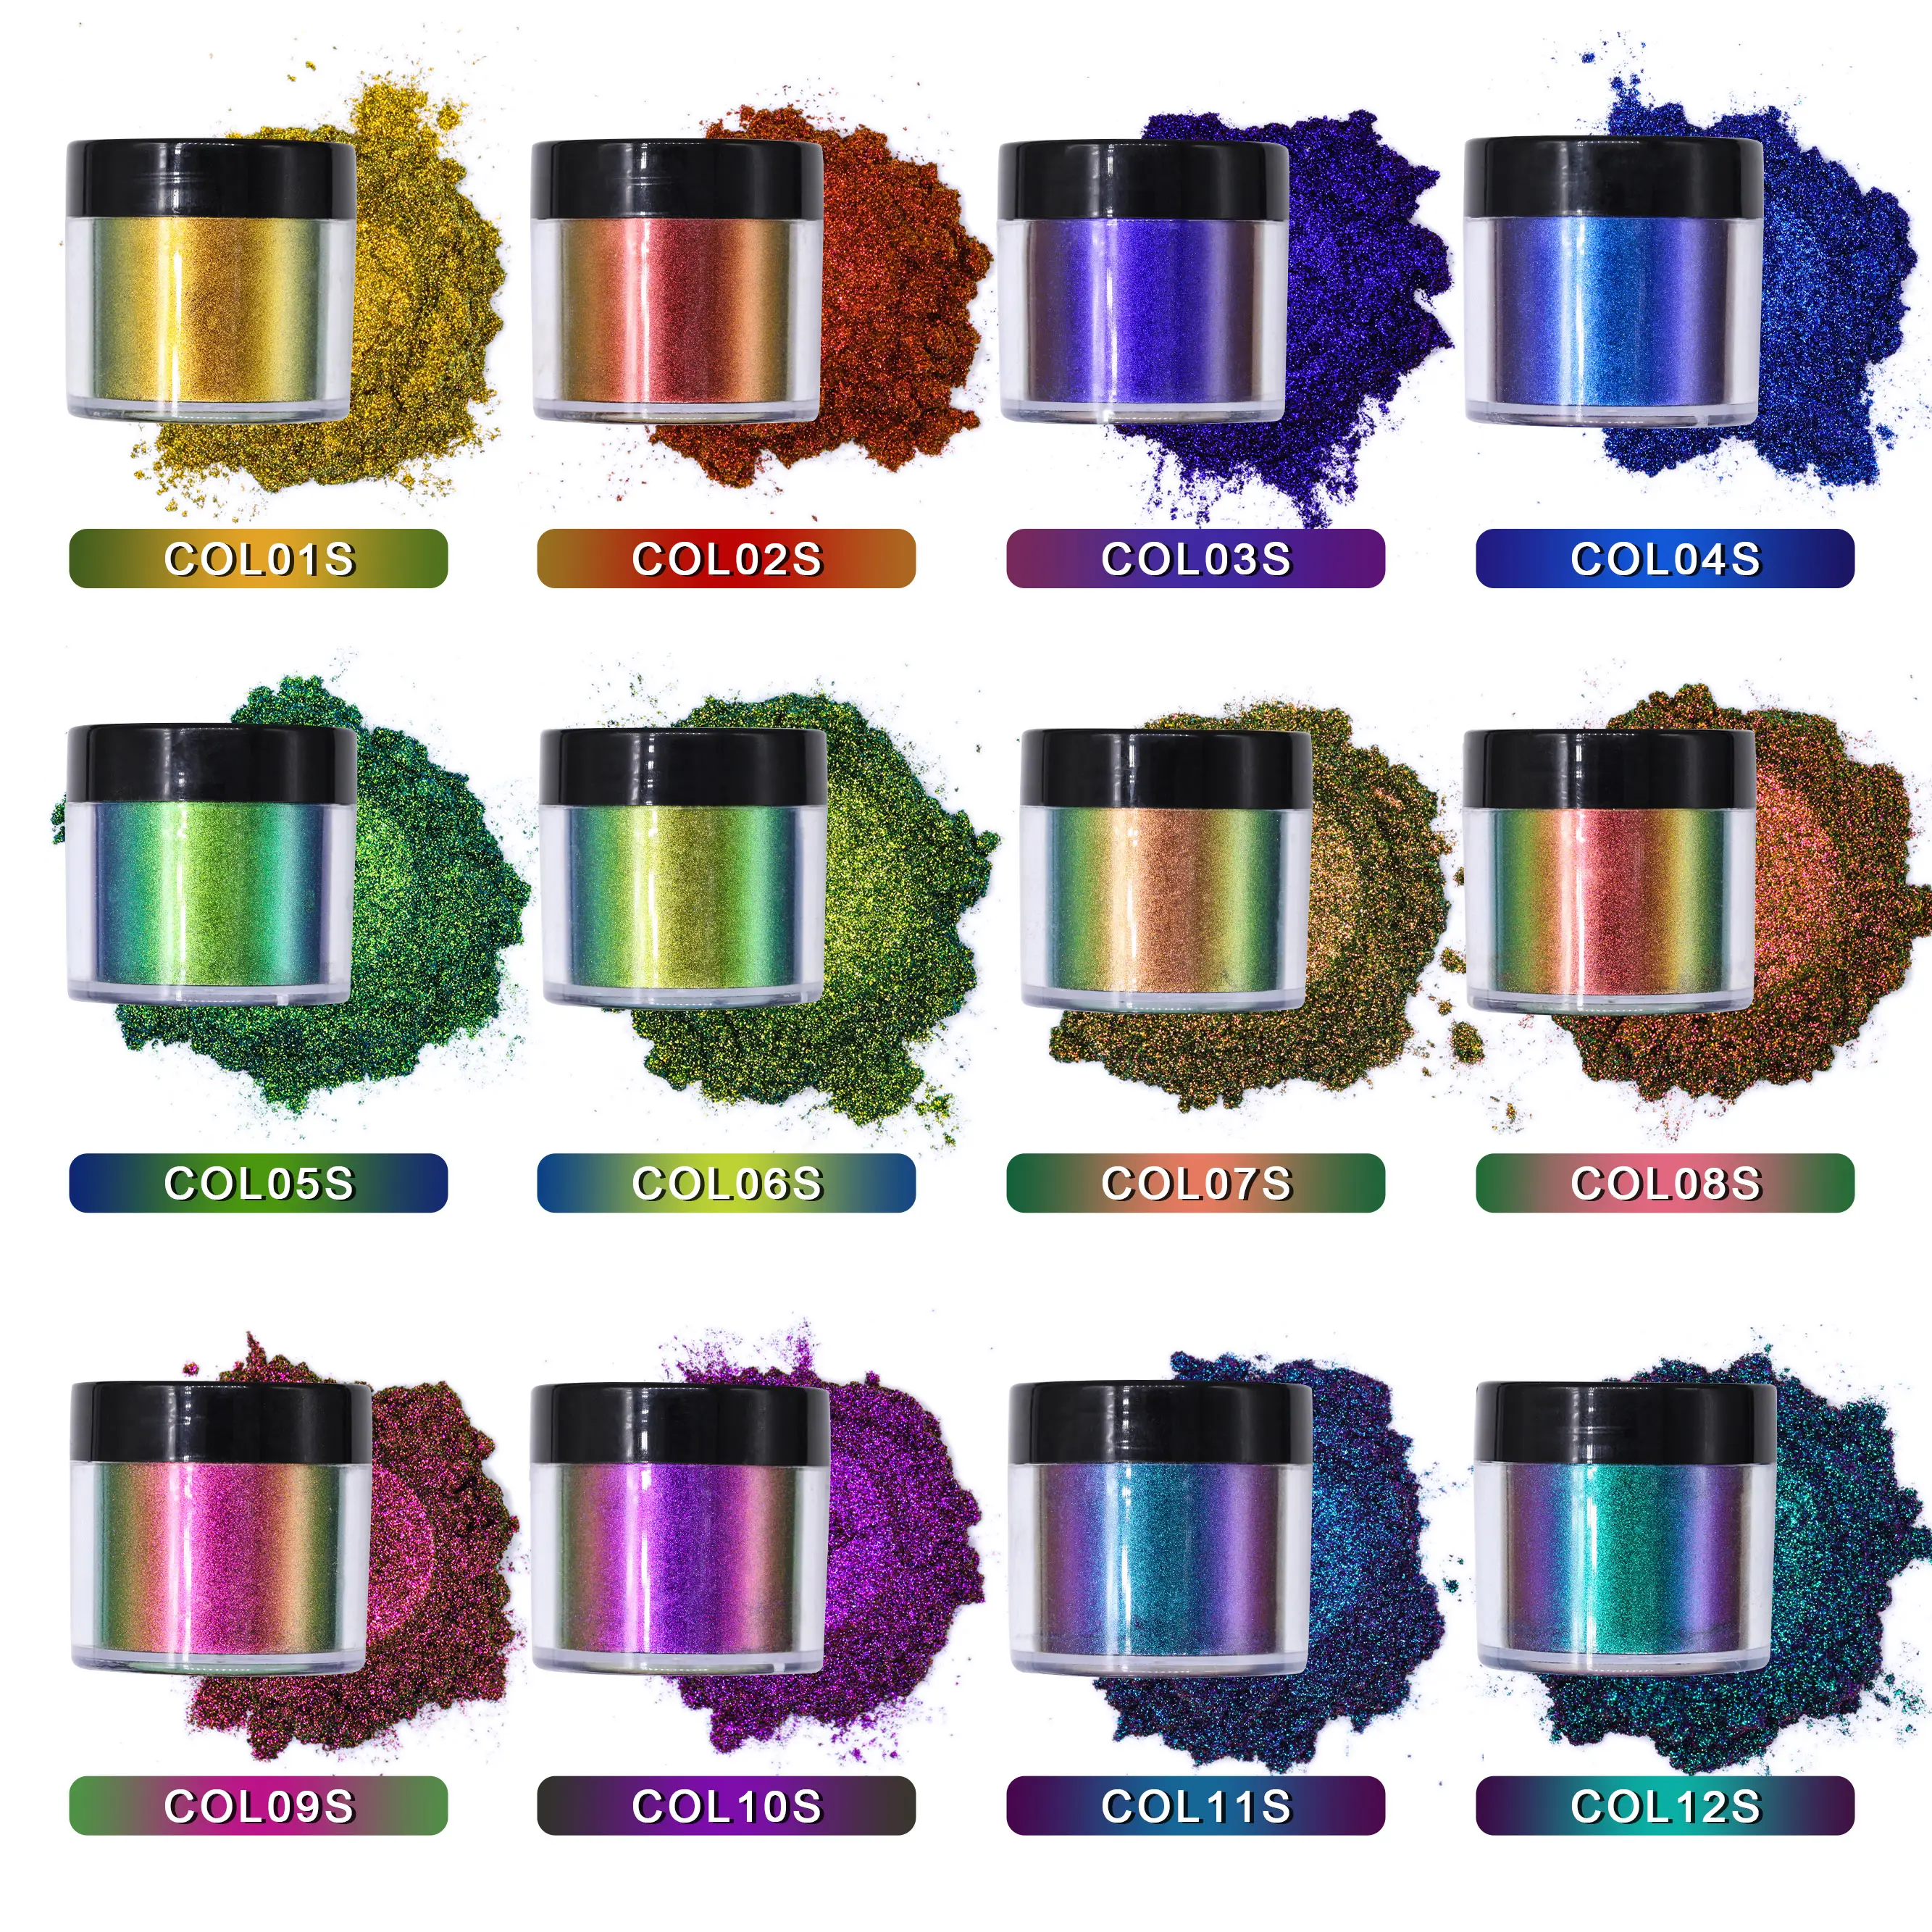 Оптовая продажа хрома пигмент Хамелеон 12 видов цветов косметический сорт тени для век Блеск Пигмент хамелеон